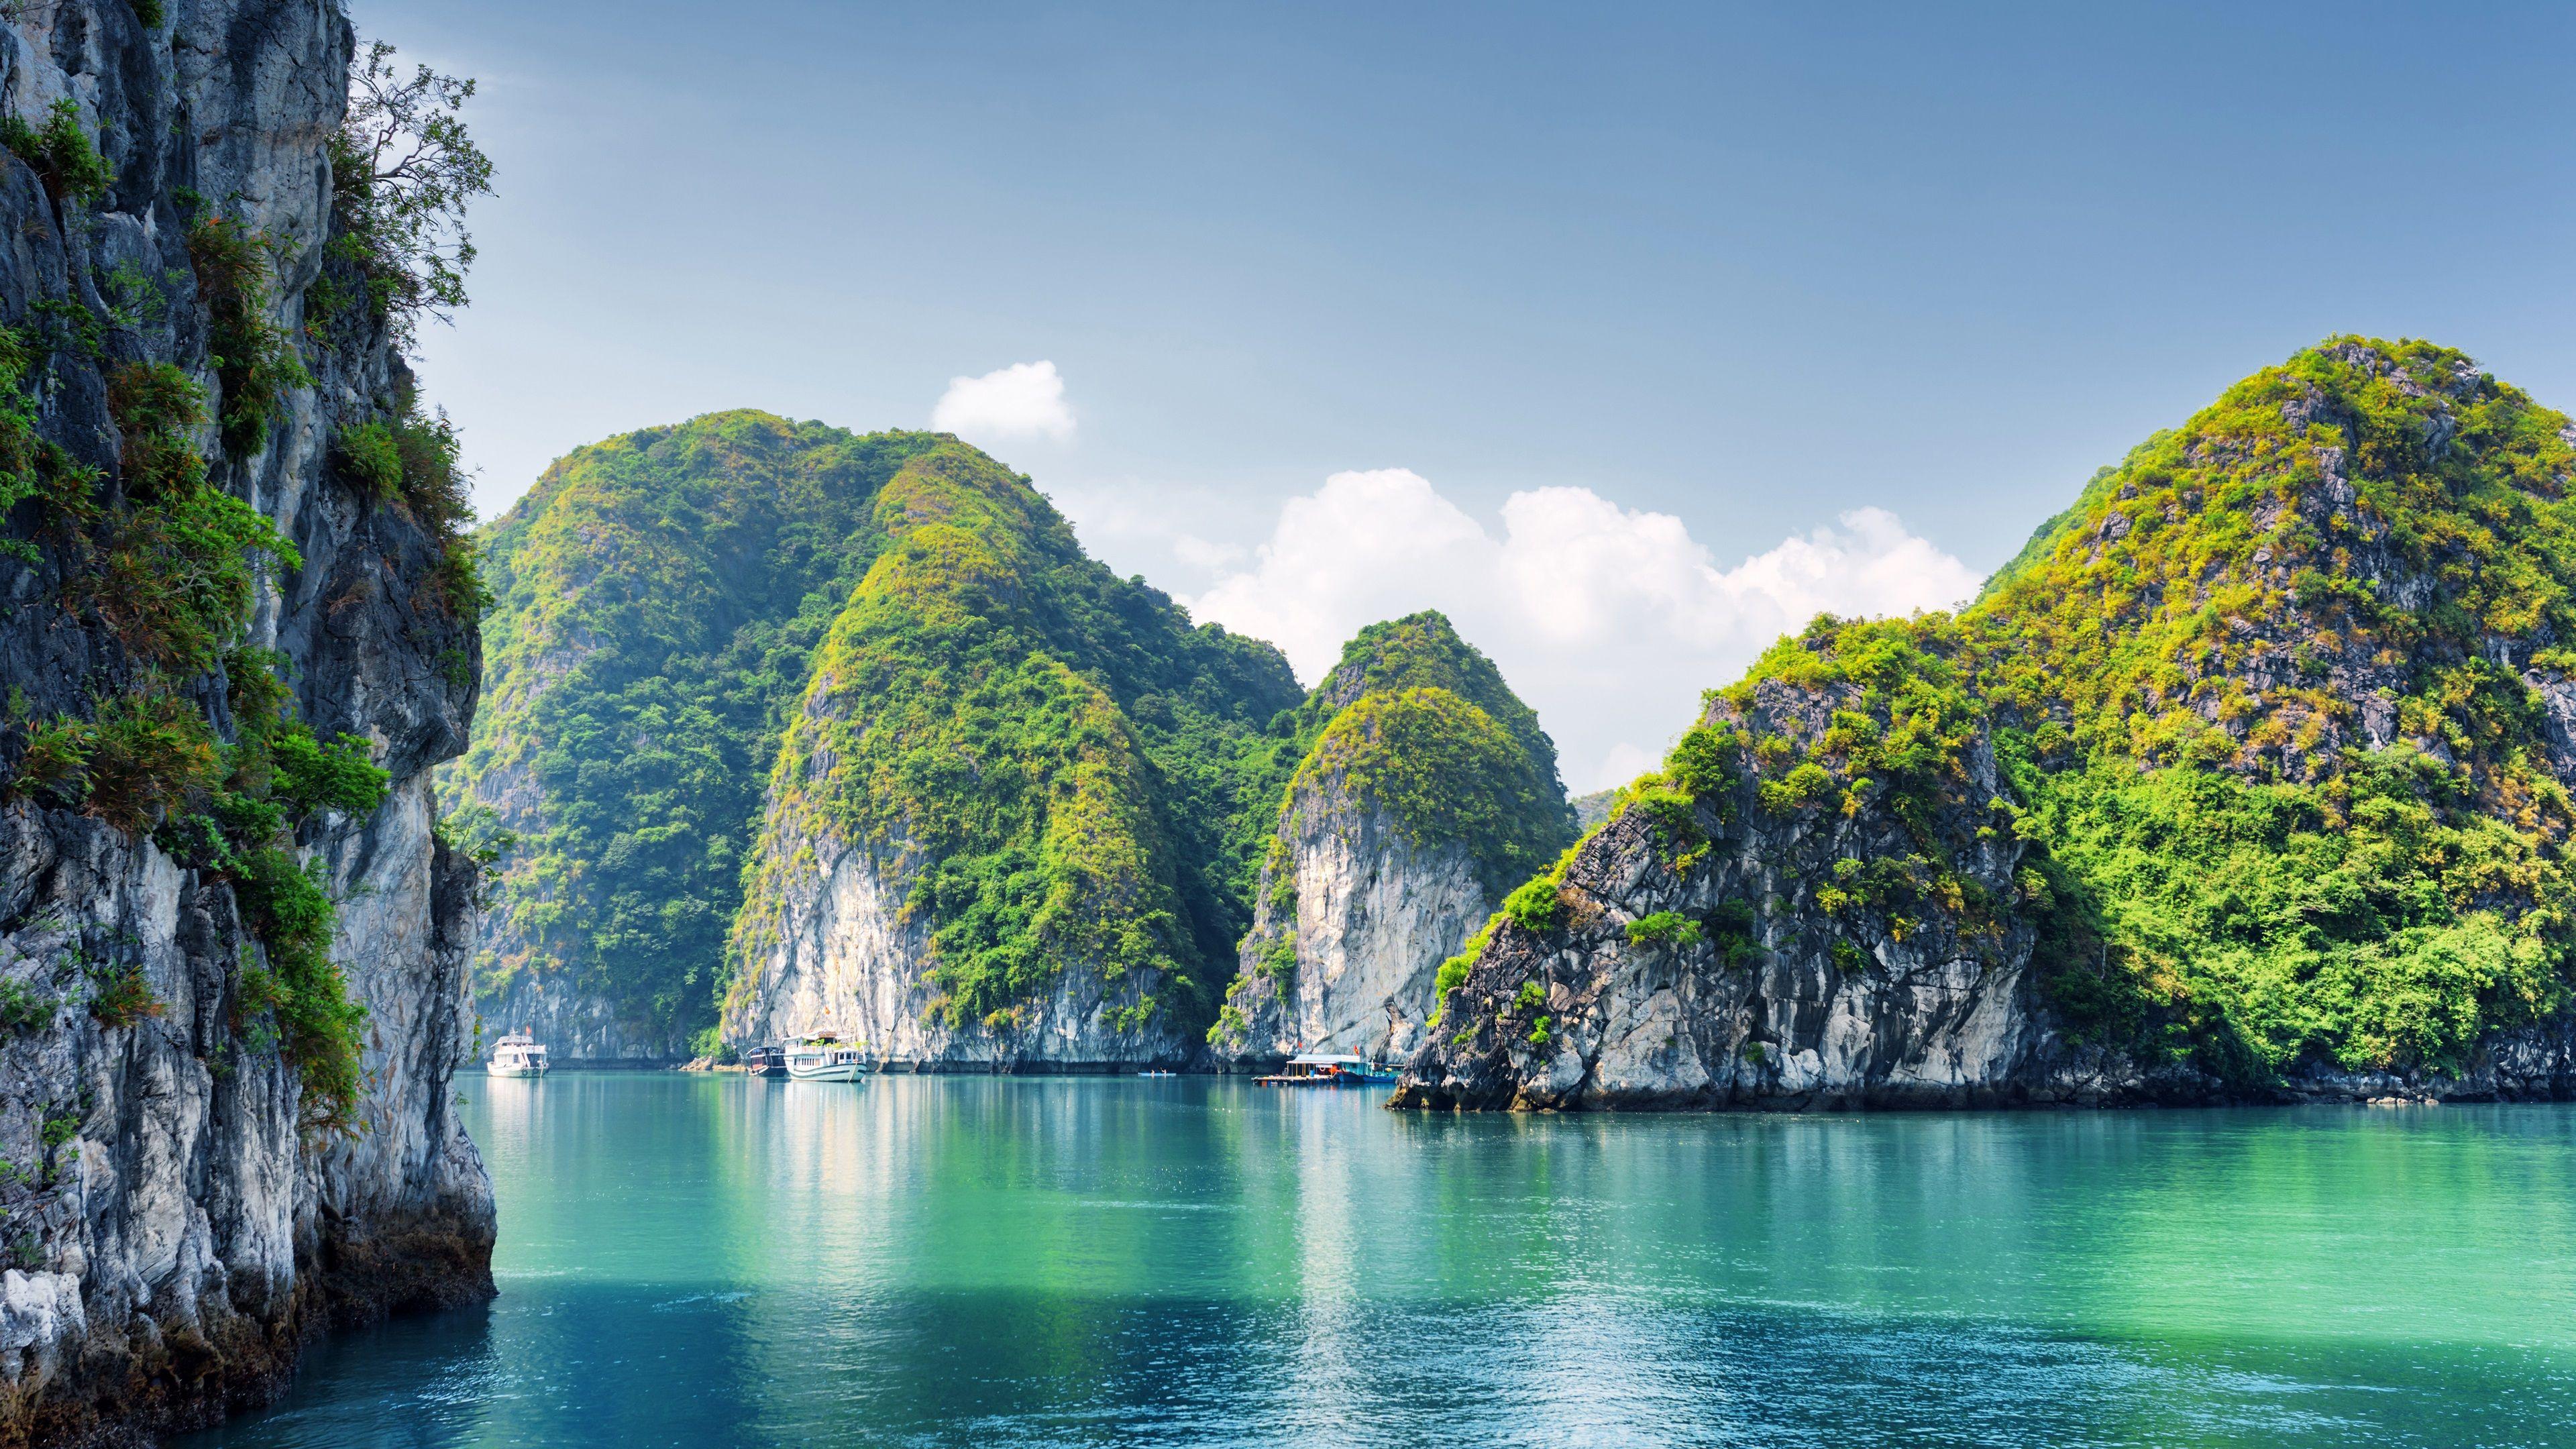 Hình nền Việt Nam 4K đem đến cho bạn một sự tinh tế và đầy cảm hứng. Với những cảnh quan đẹp tuyệt vời, hình nền sẽ là một nơi nghỉ ngơi và thư giãn cho bạn sau một ngày dài.